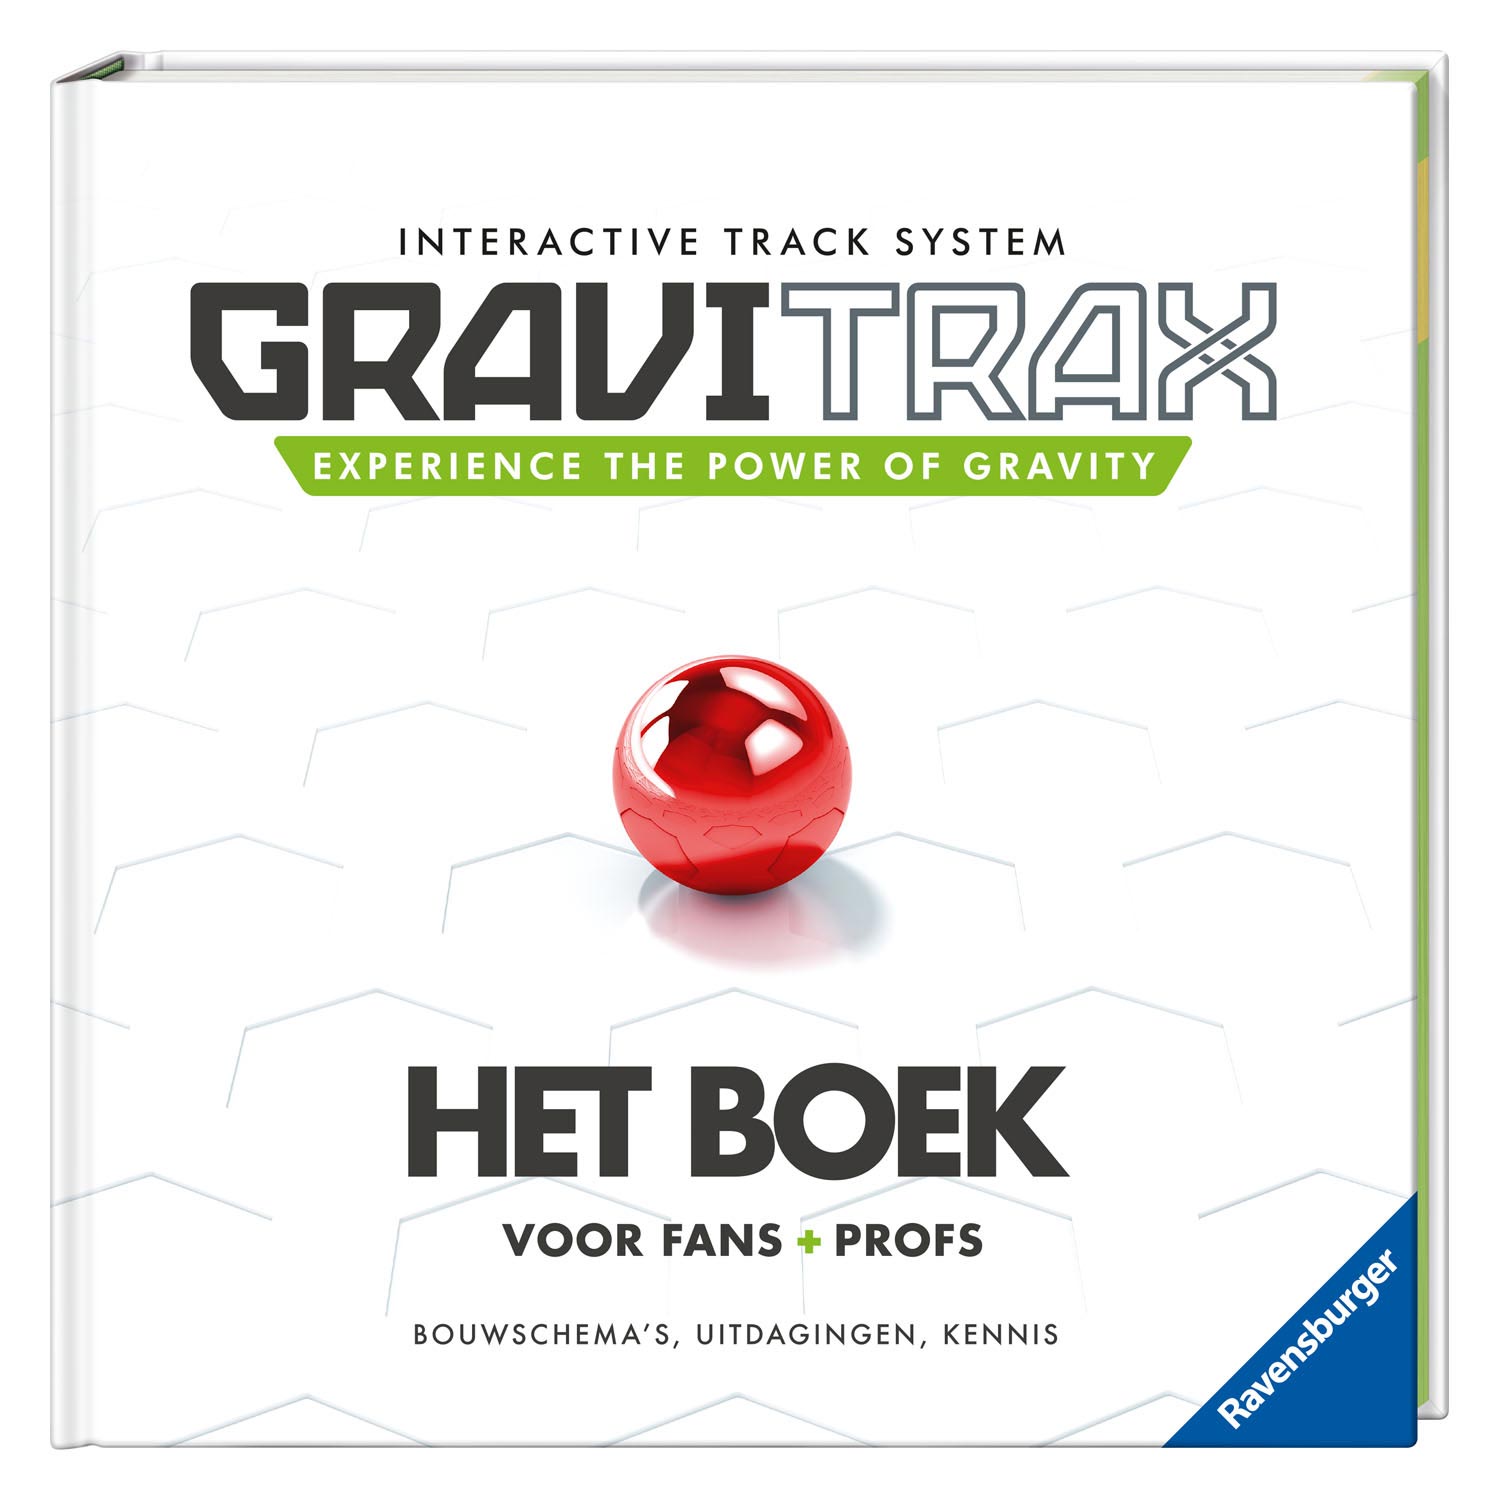 GraviTrax Das Buch für Fans und Profis